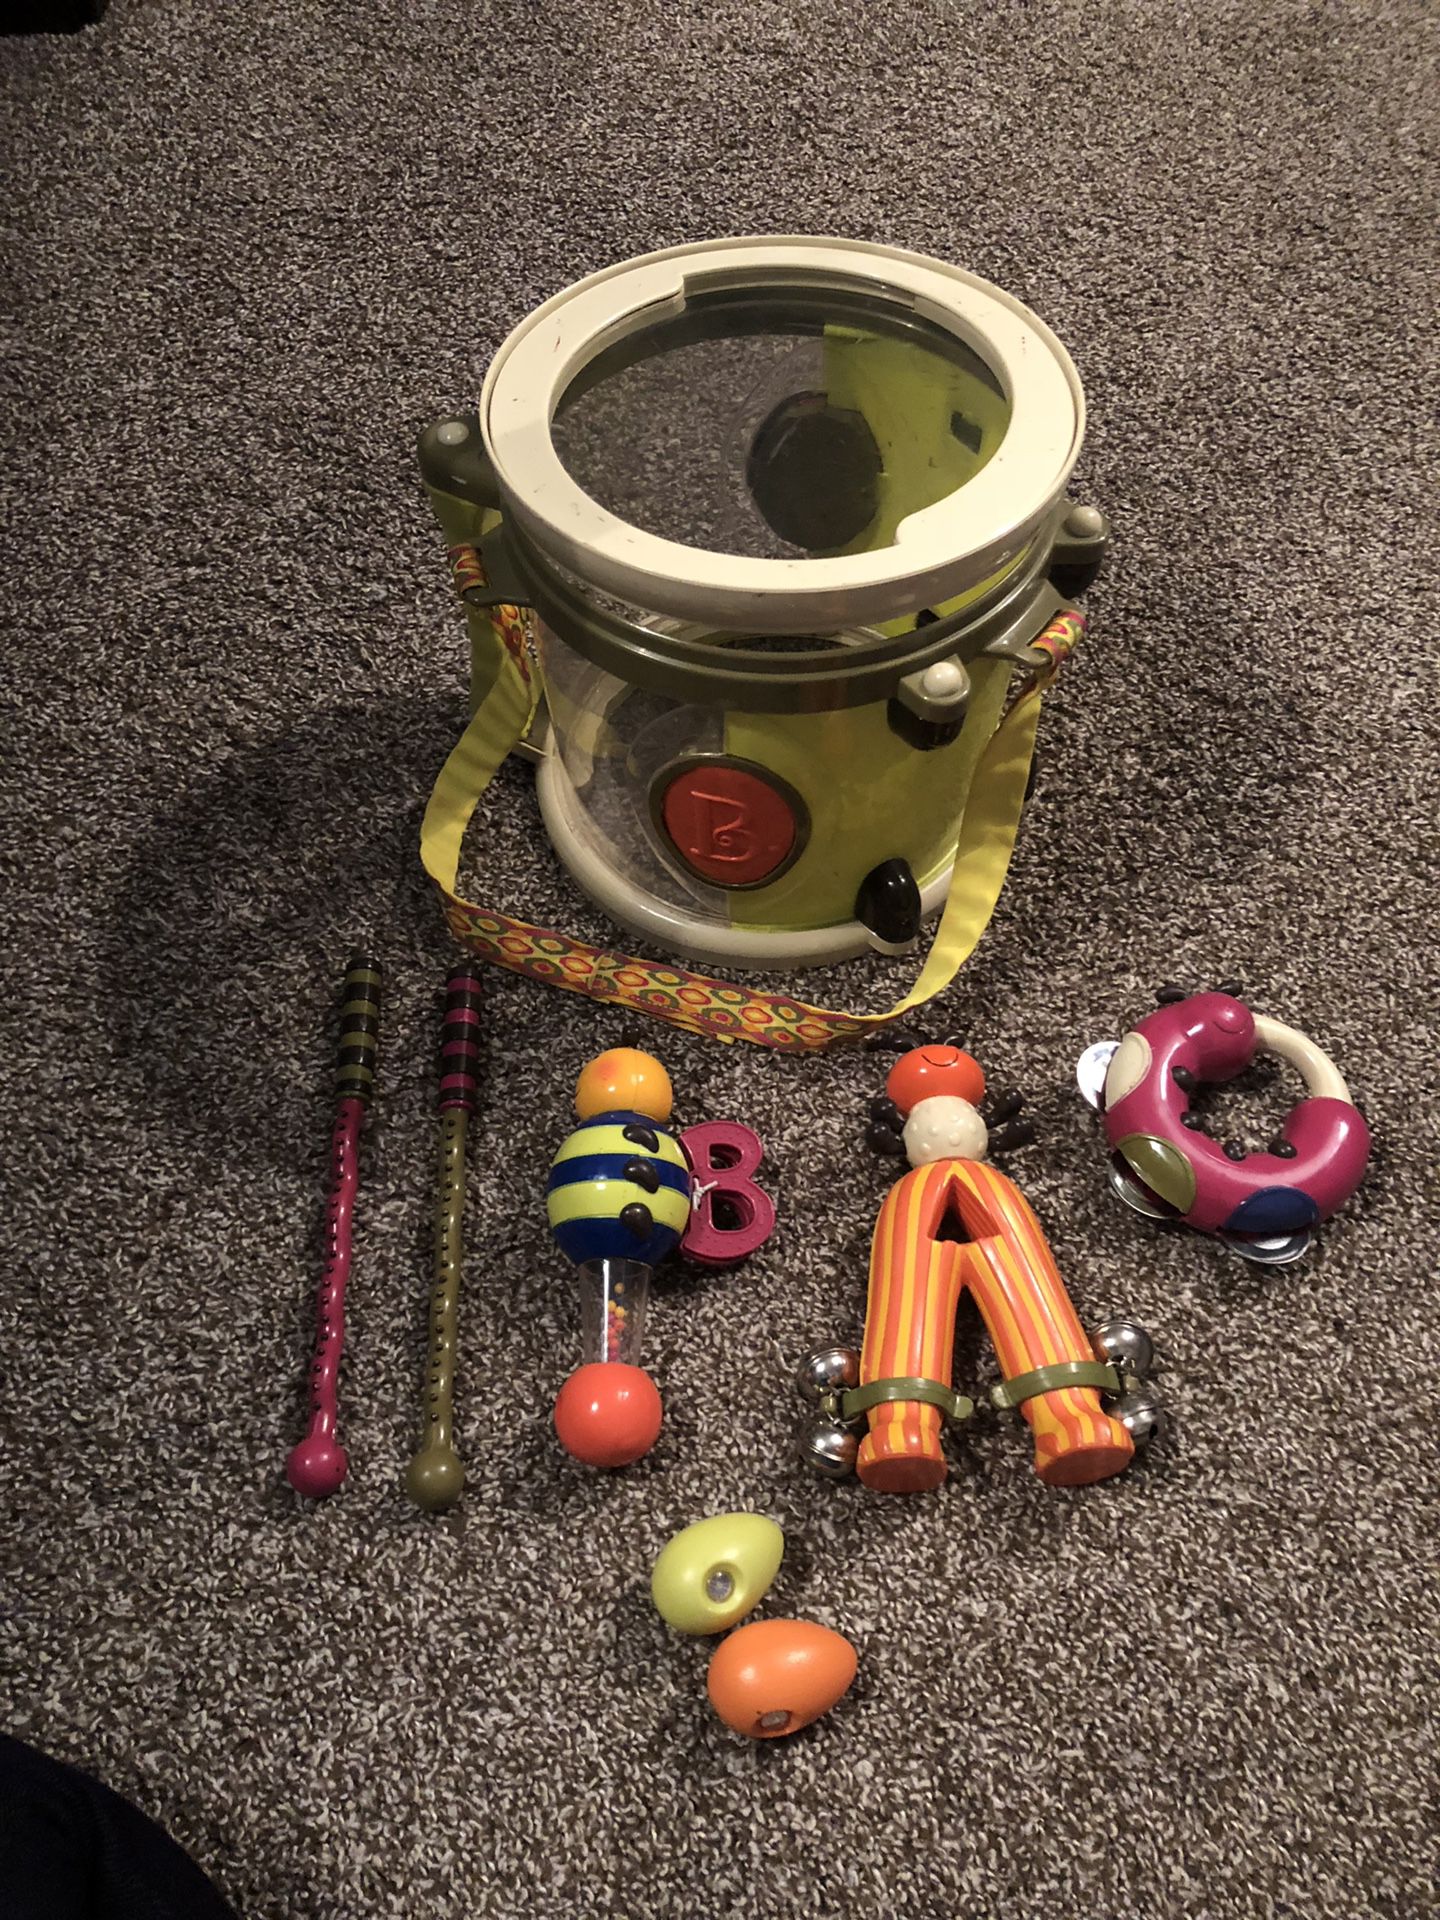 Drum toy